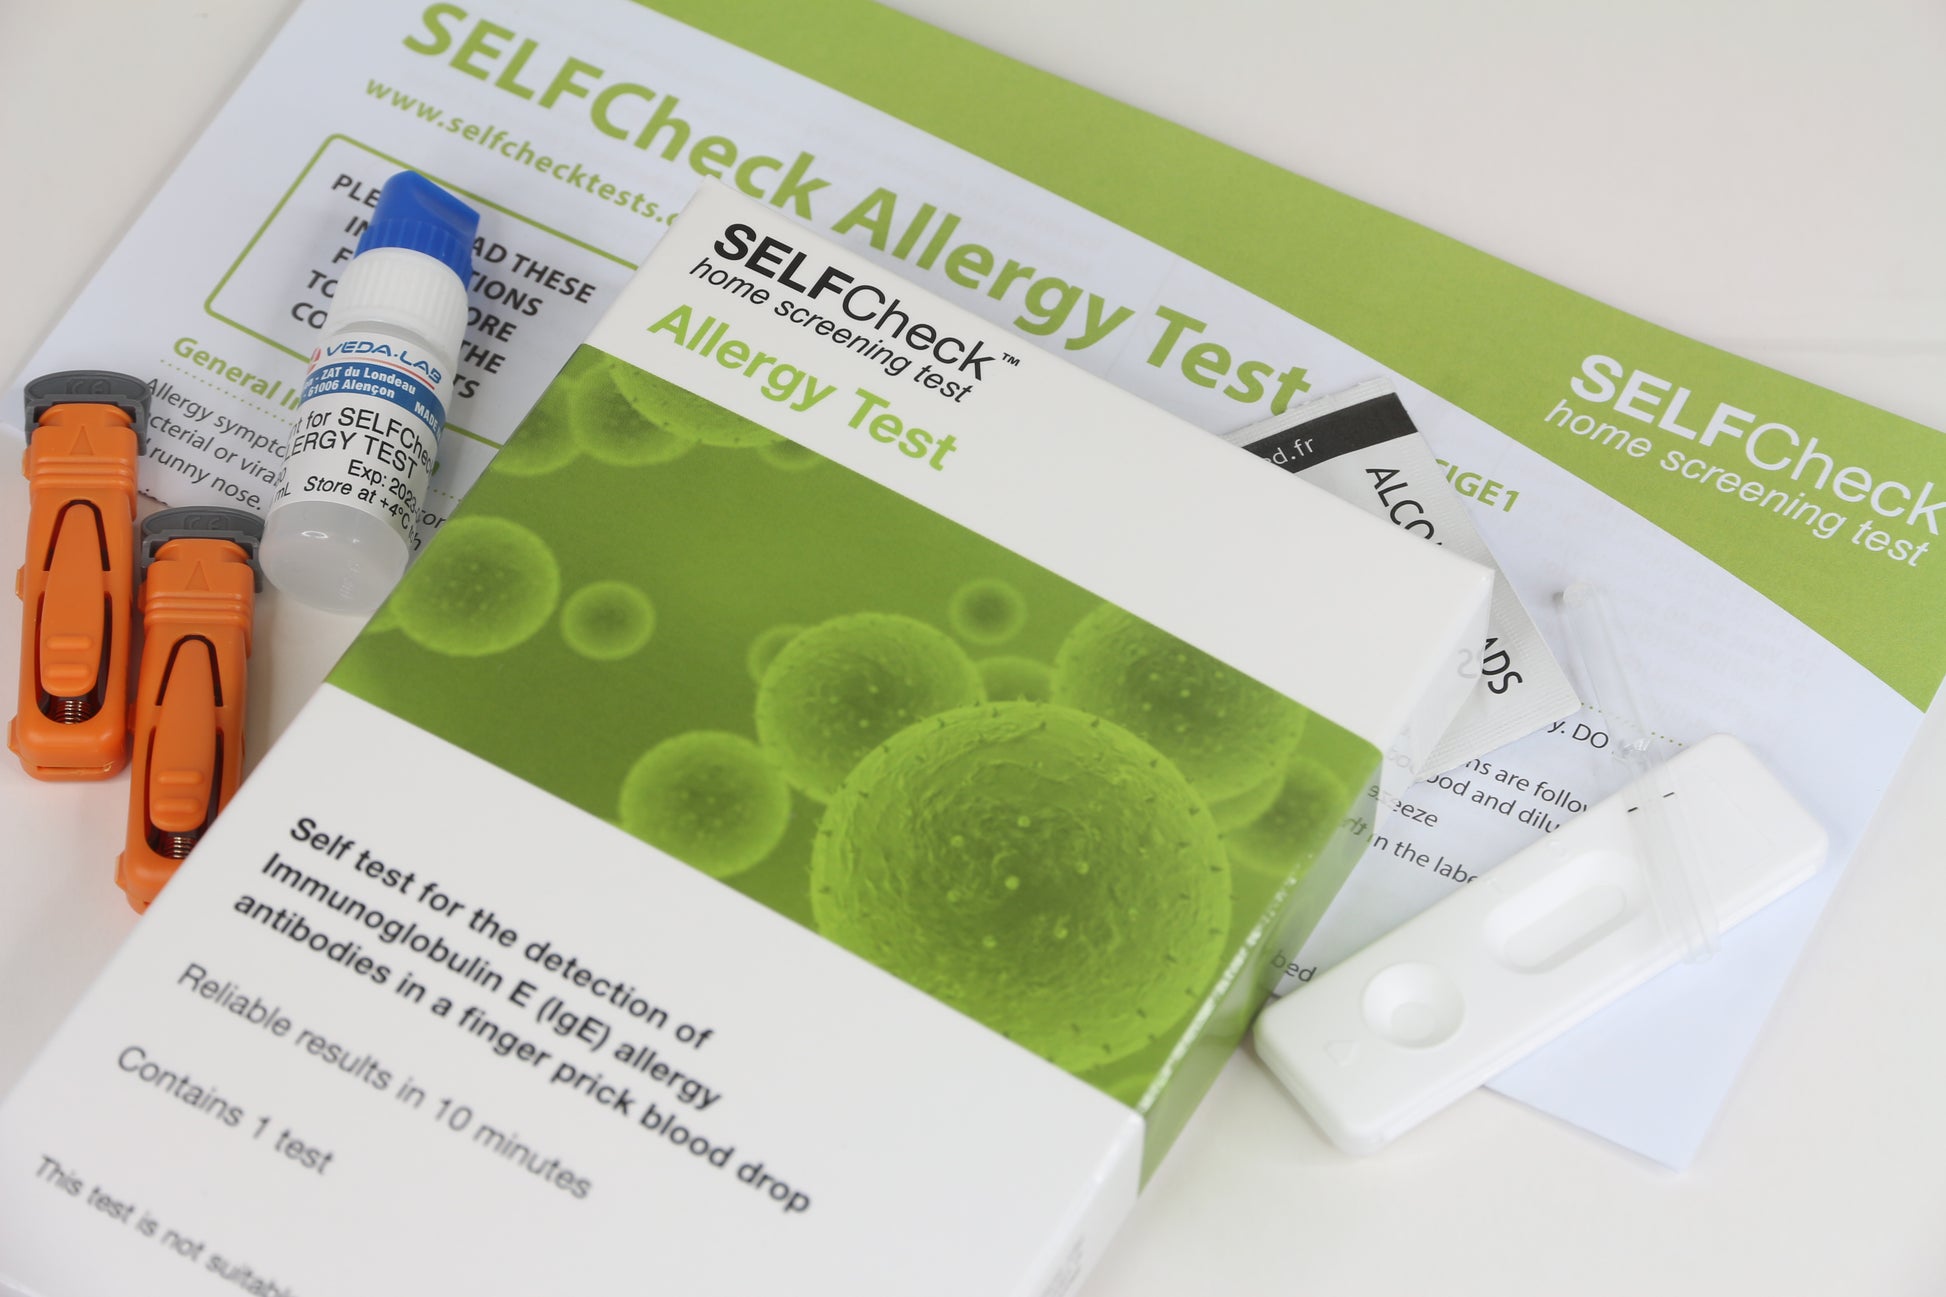 SELFCheck Allergy Test Kit